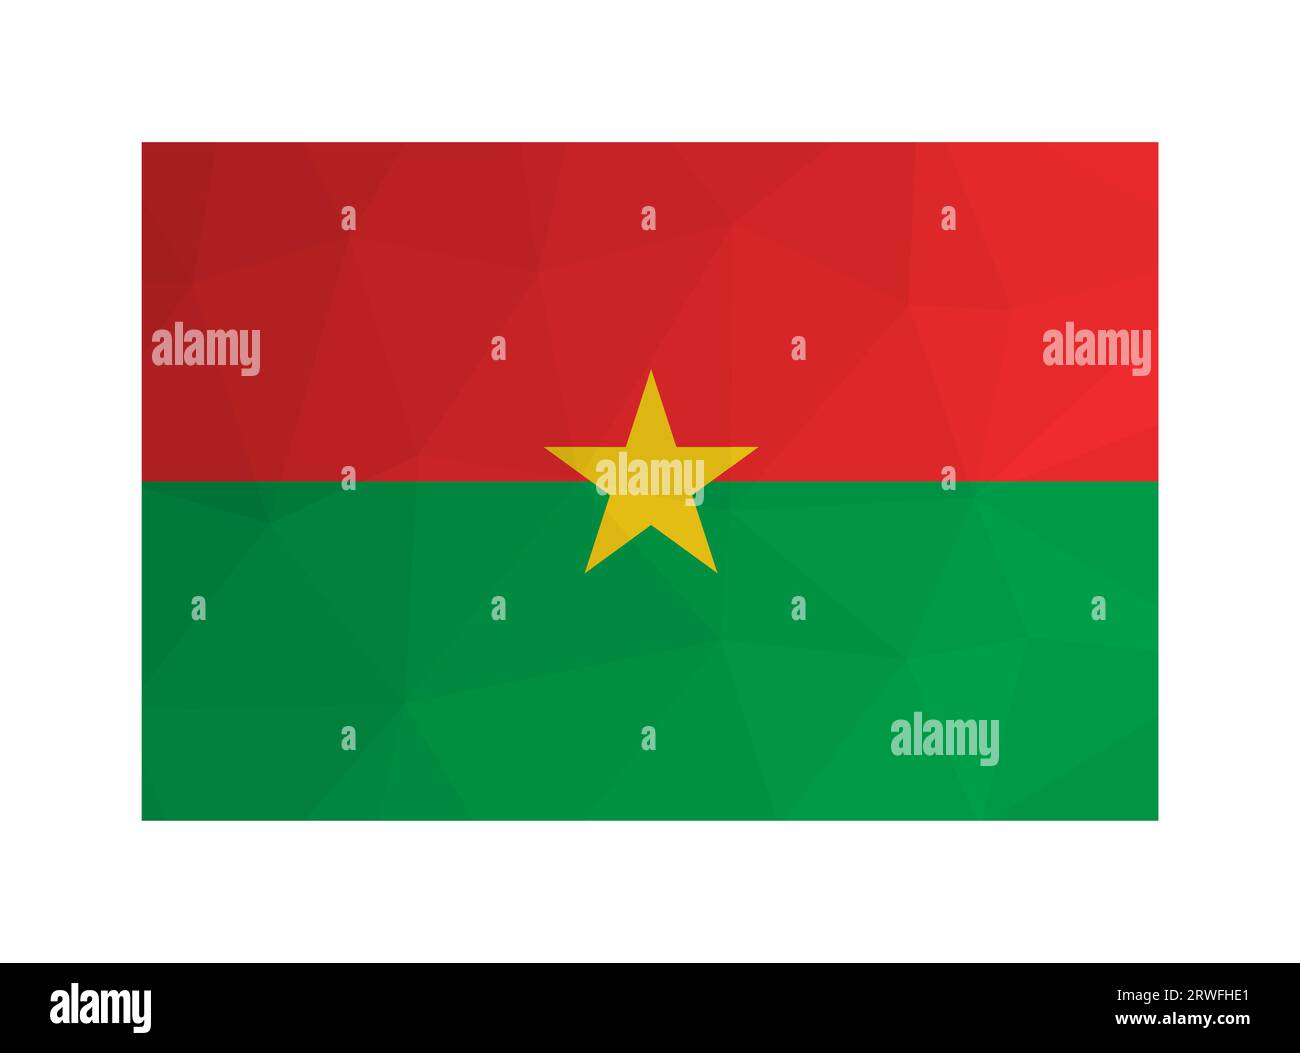 Illustration isolée vectorielle. Symbole officiel du Burkina Faso. Drapeau national avec des bandes d'étoiles rouges et vertes et jaunes. Design créatif en poly bas Illustration de Vecteur